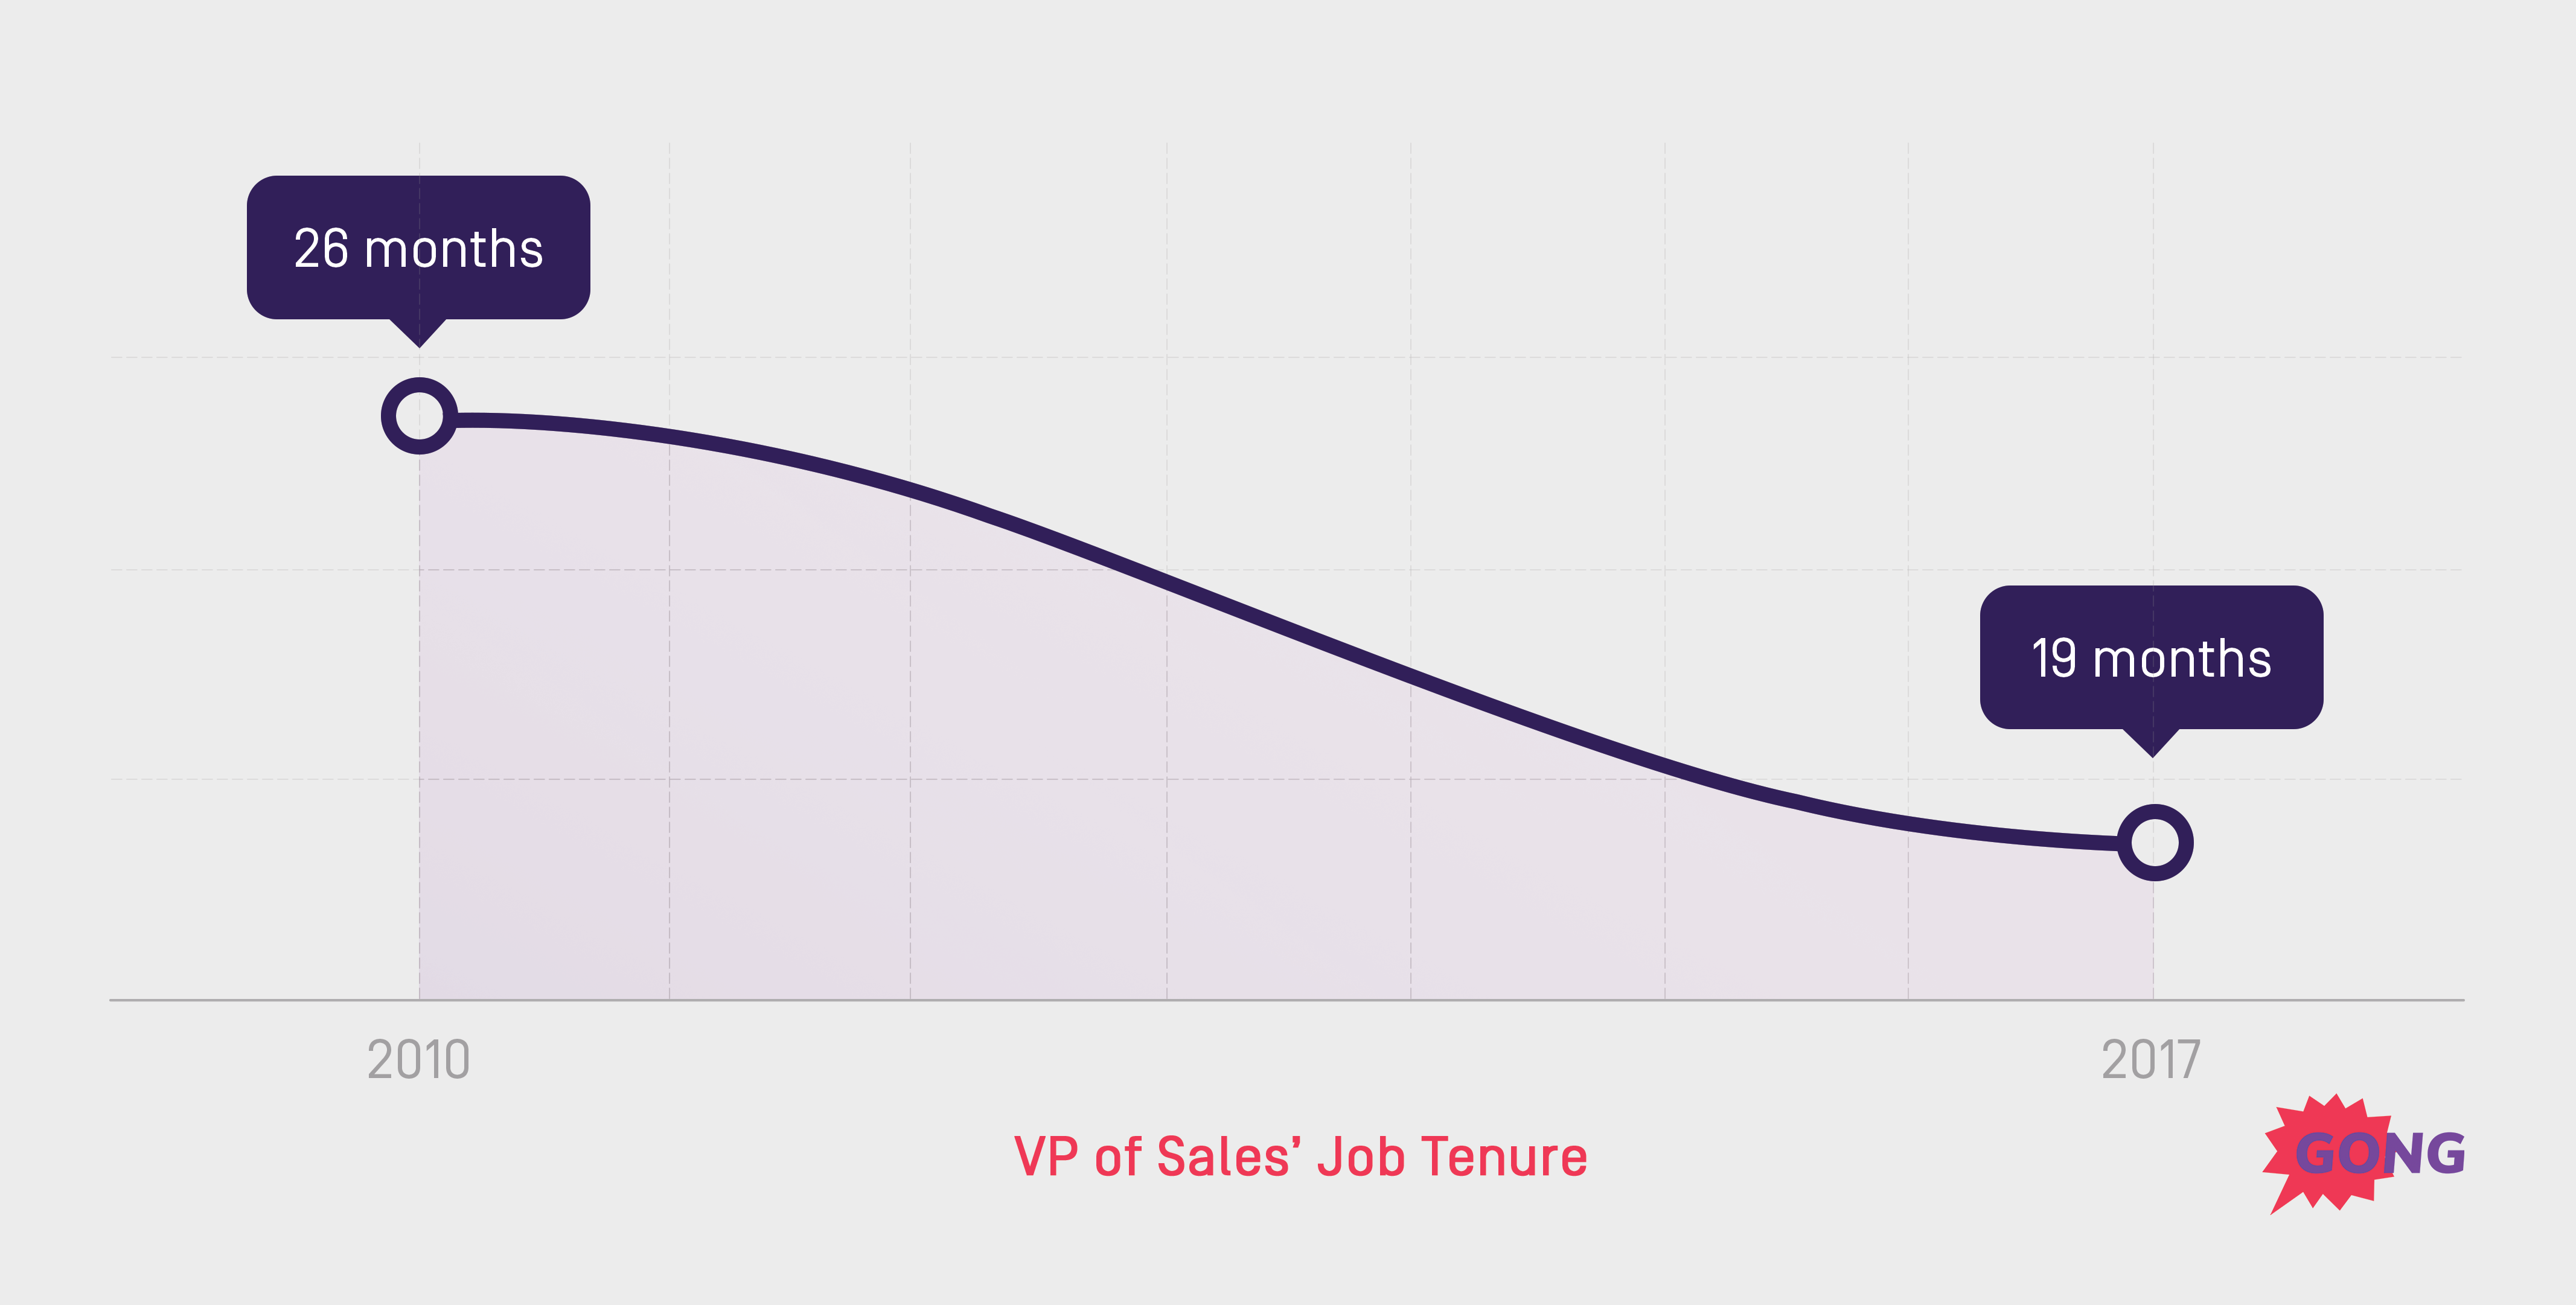 vp of sales job tenure is decreasing